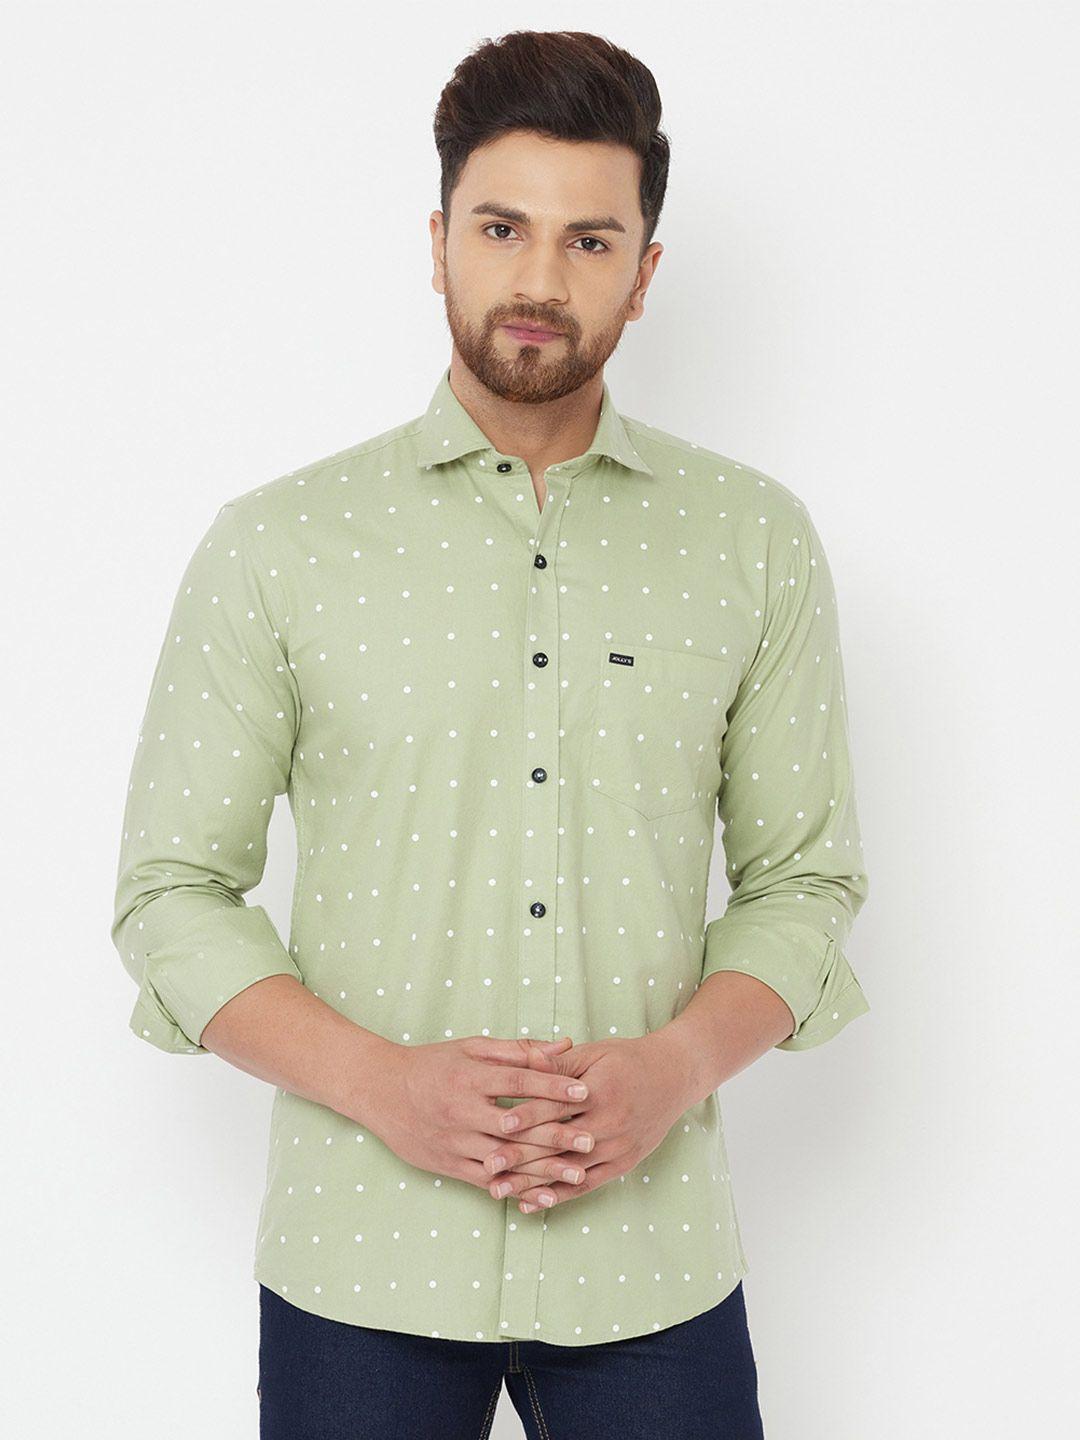 jolly's men green polka dot printed casual shirt